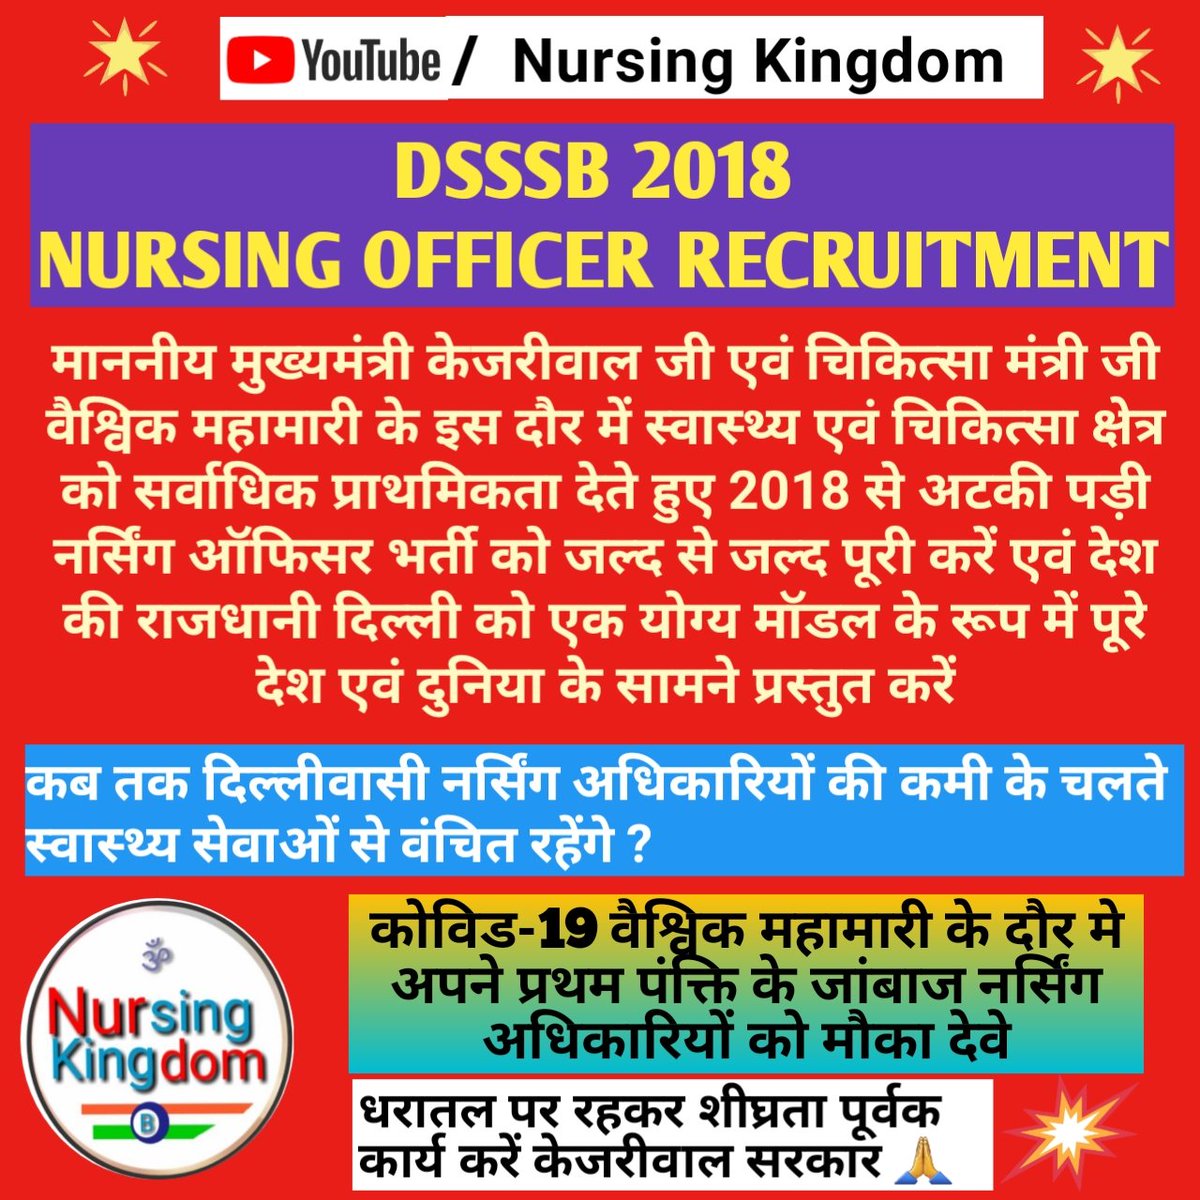 #nursing_officer_joining_dsssb_2020
Dear @ArvindKejriwal  ji please complete the recruitment of 1024 nursing officers as early as possible
@drharshvardhan 
@CMODelhi 
@BJP4Delhi 
@SatyendarJain 
@DelhiVsCorona #nursing_officer_joining_dsssb_2020